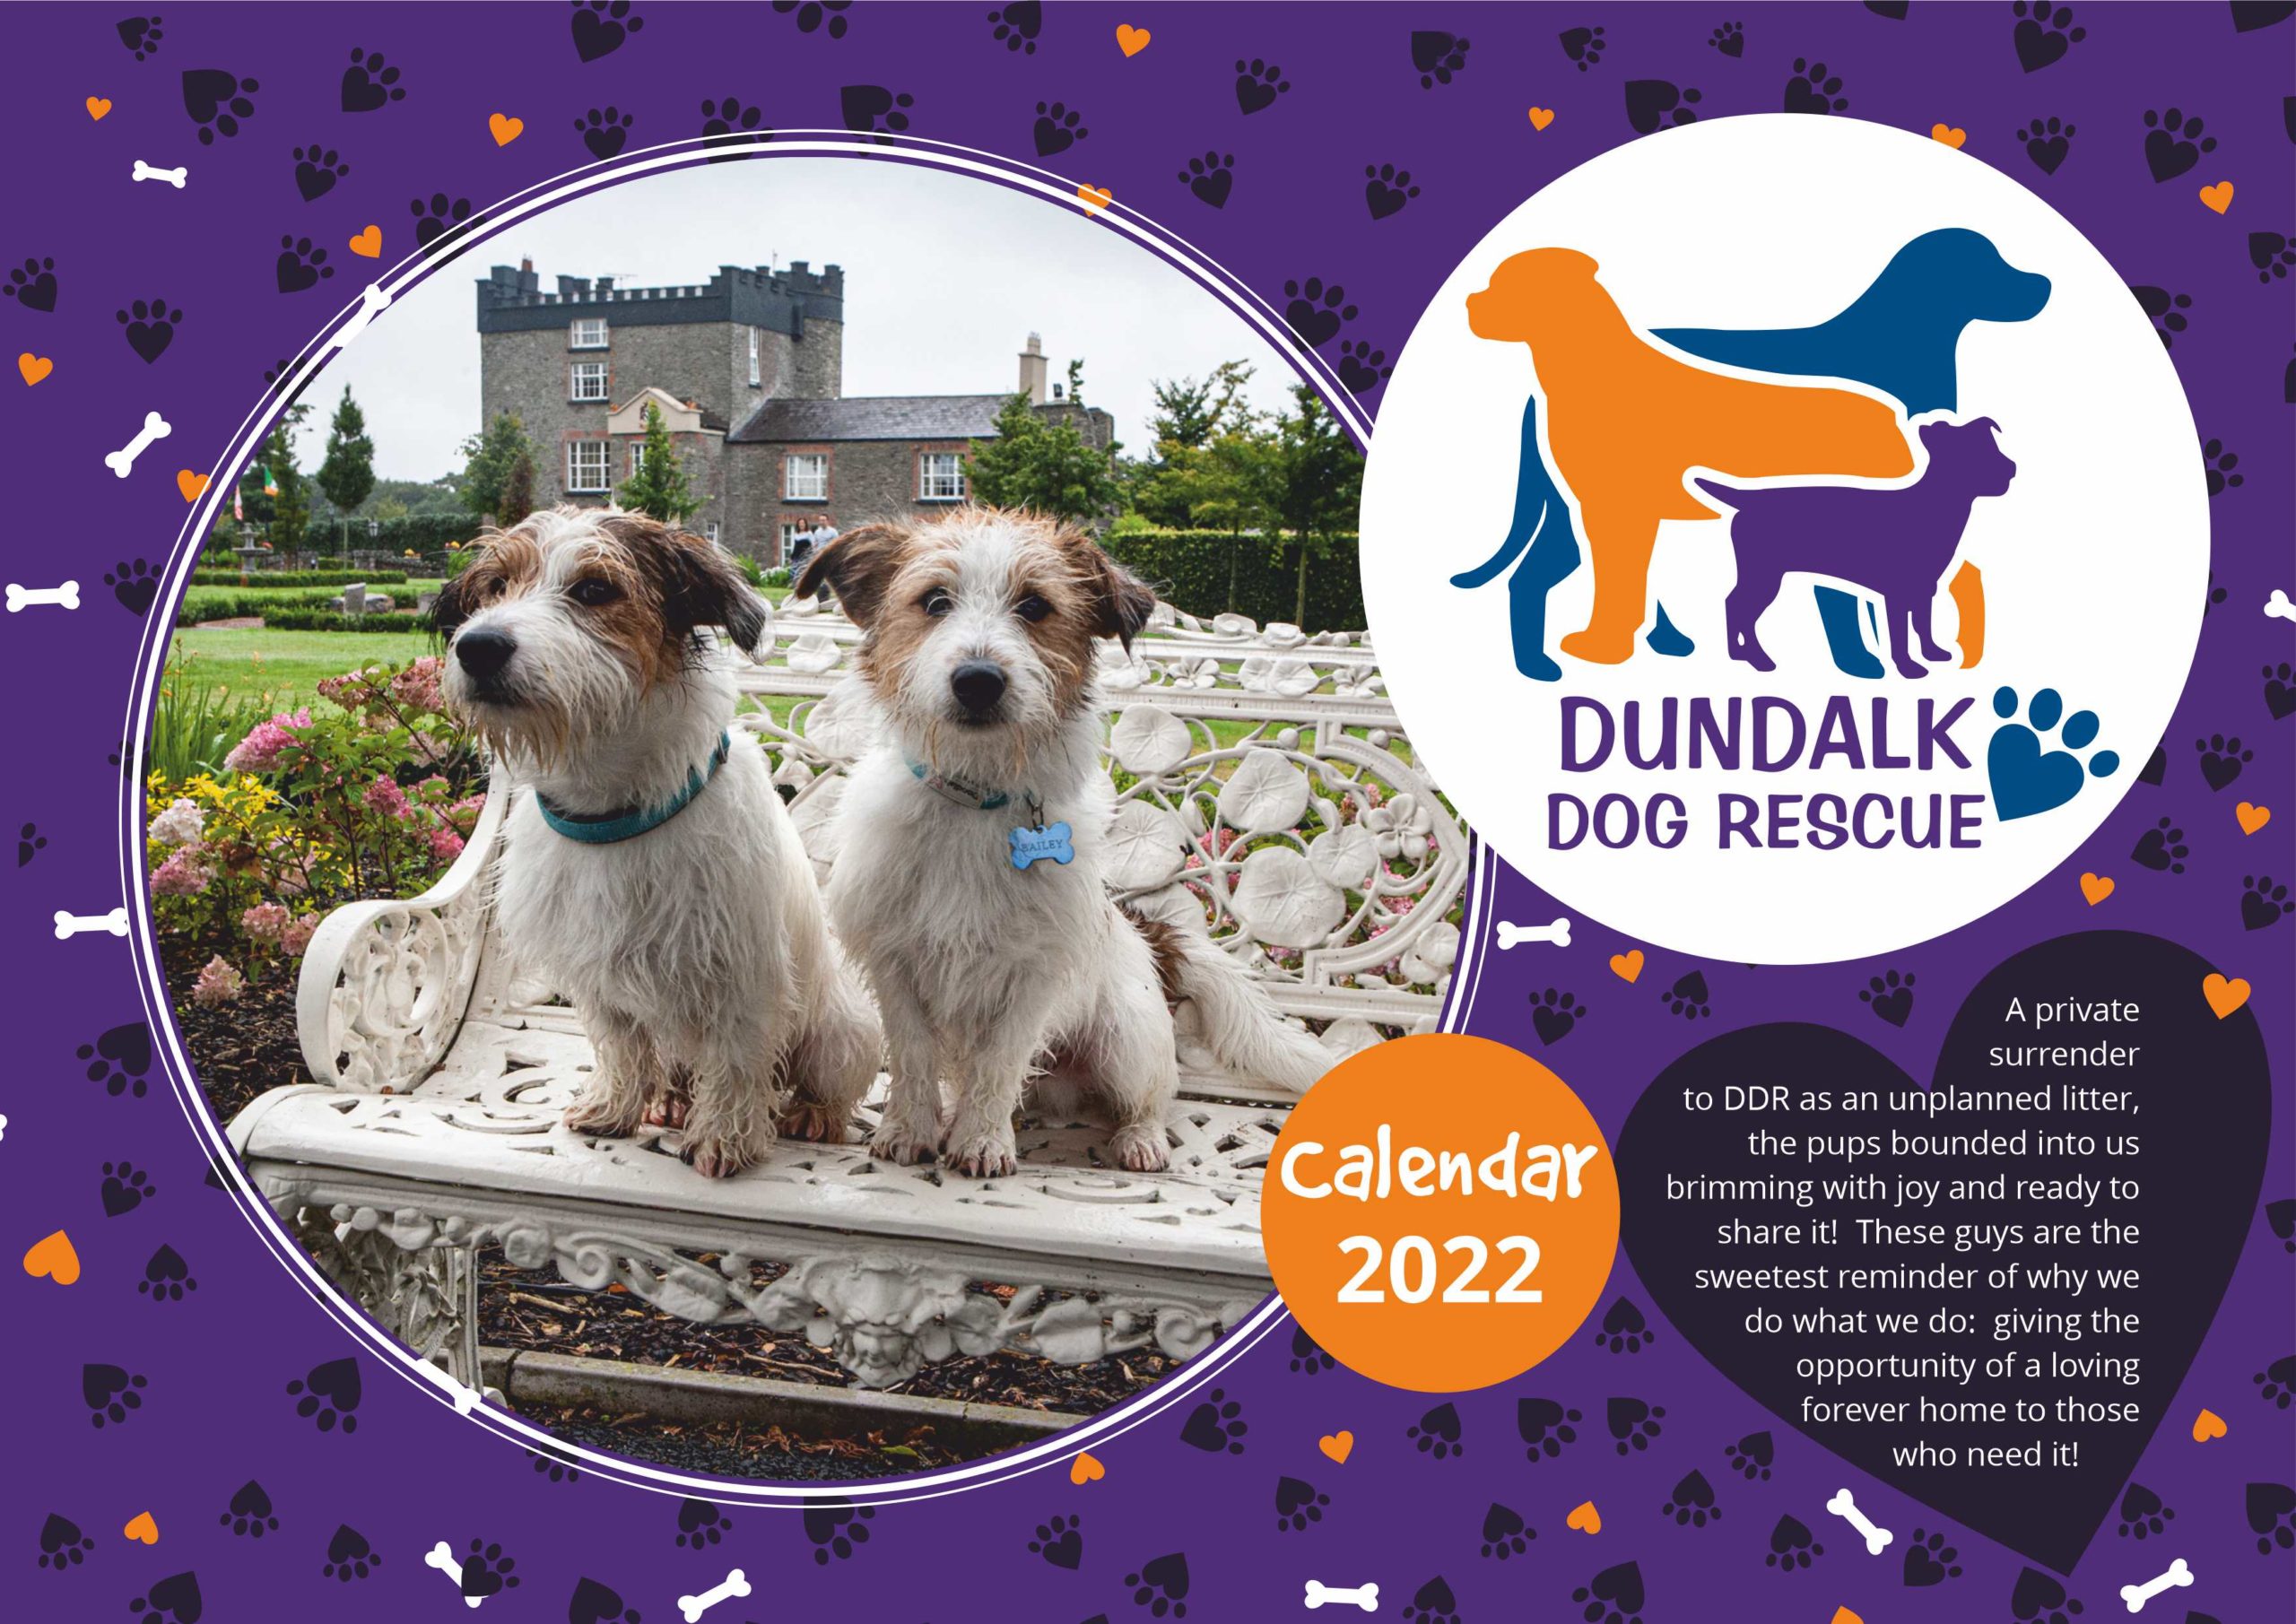 dundalk dog rescue calendar 2022